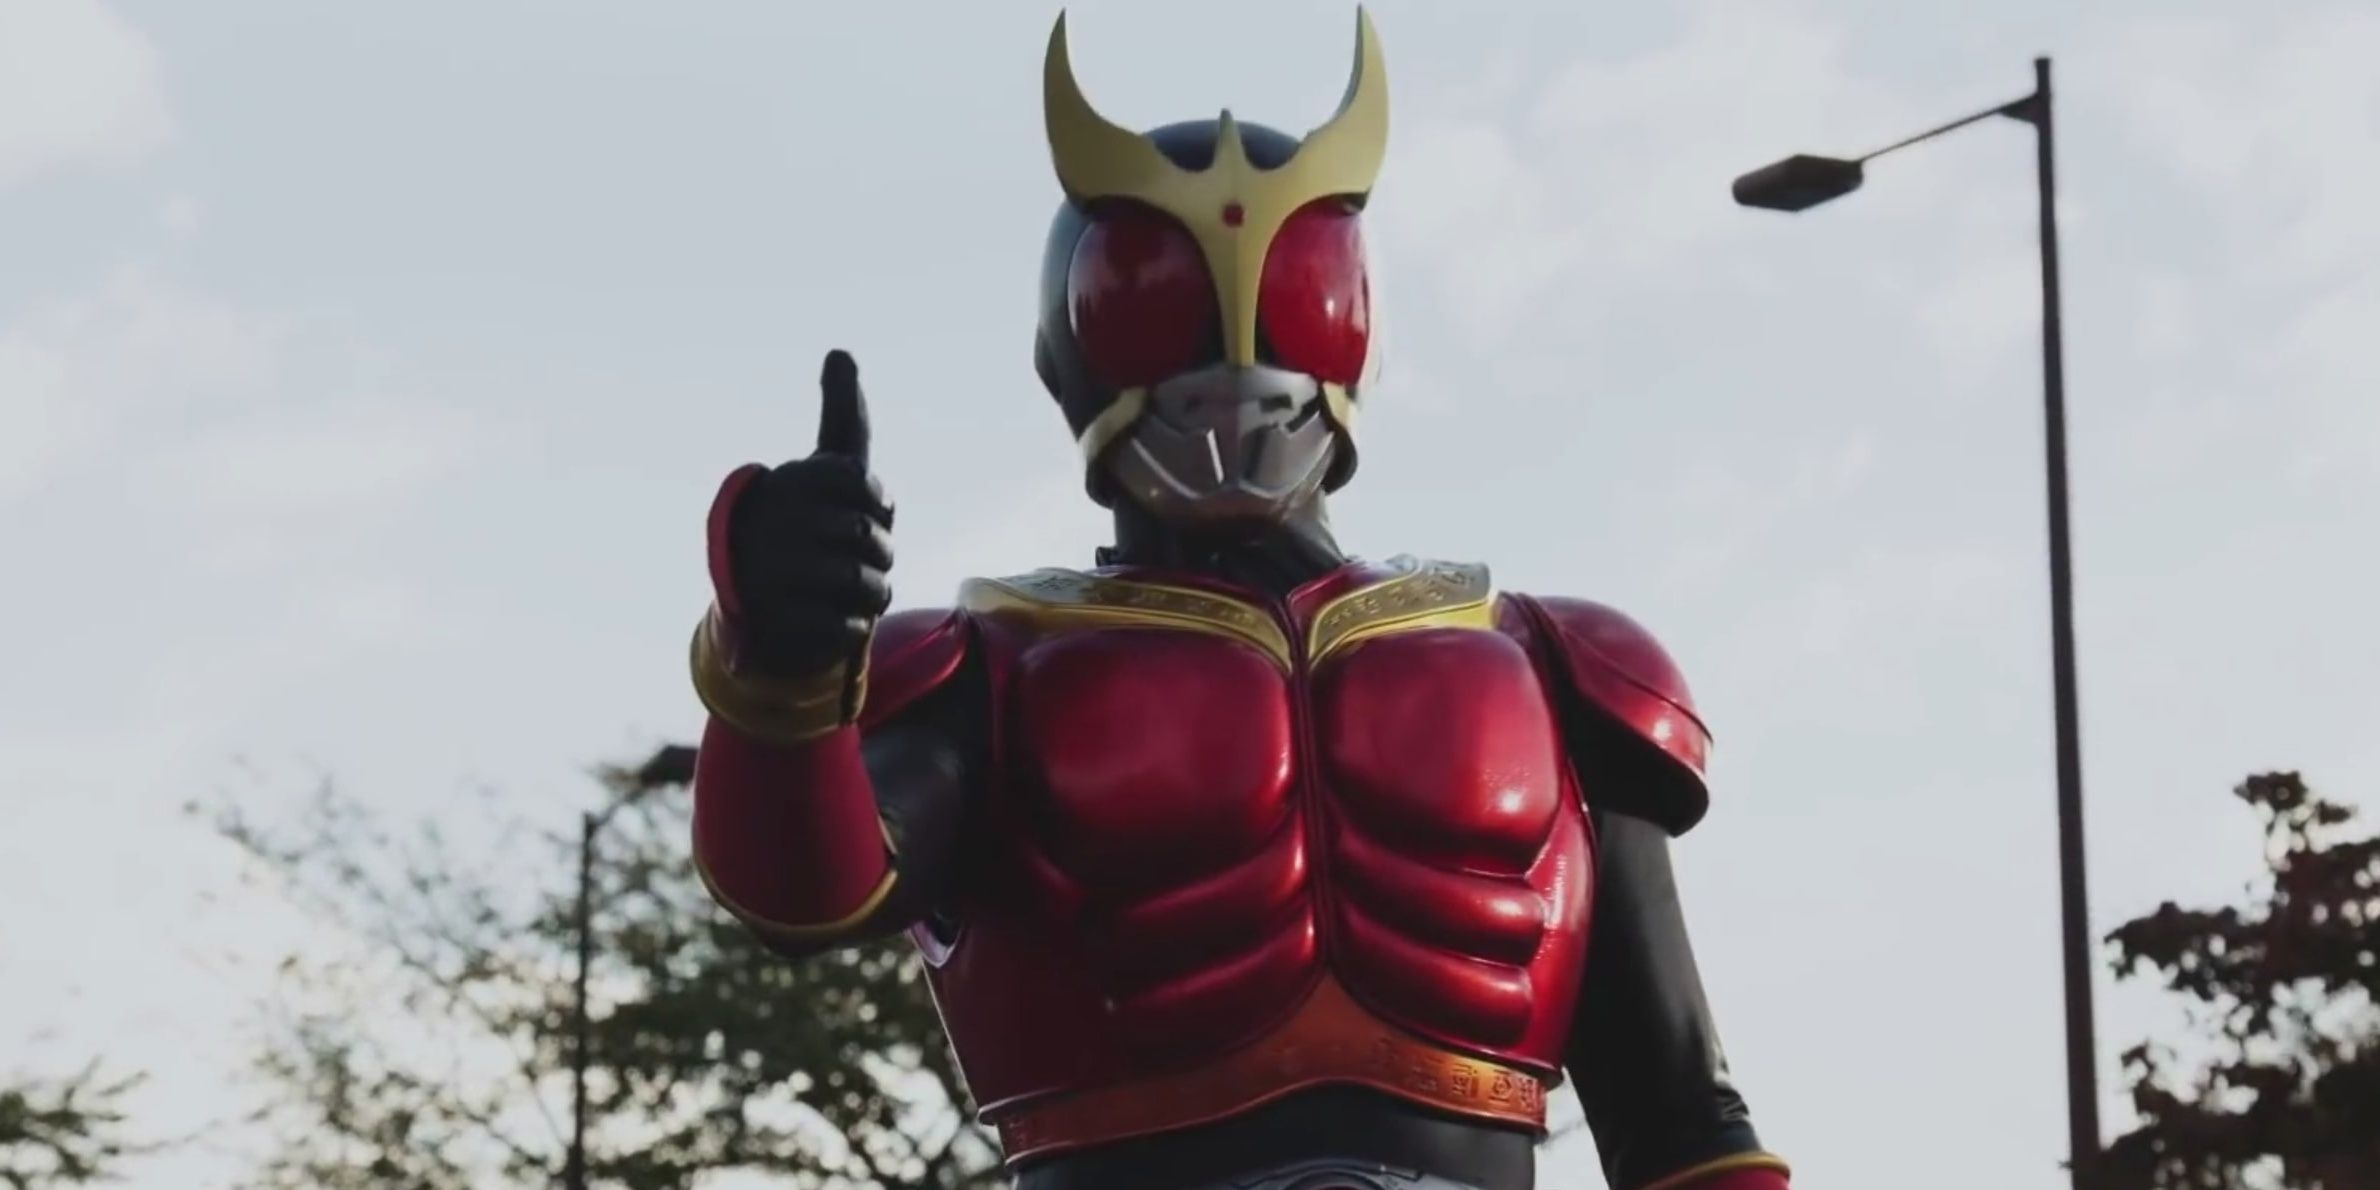 Kamen Rider Kuuga giving a thumbs up